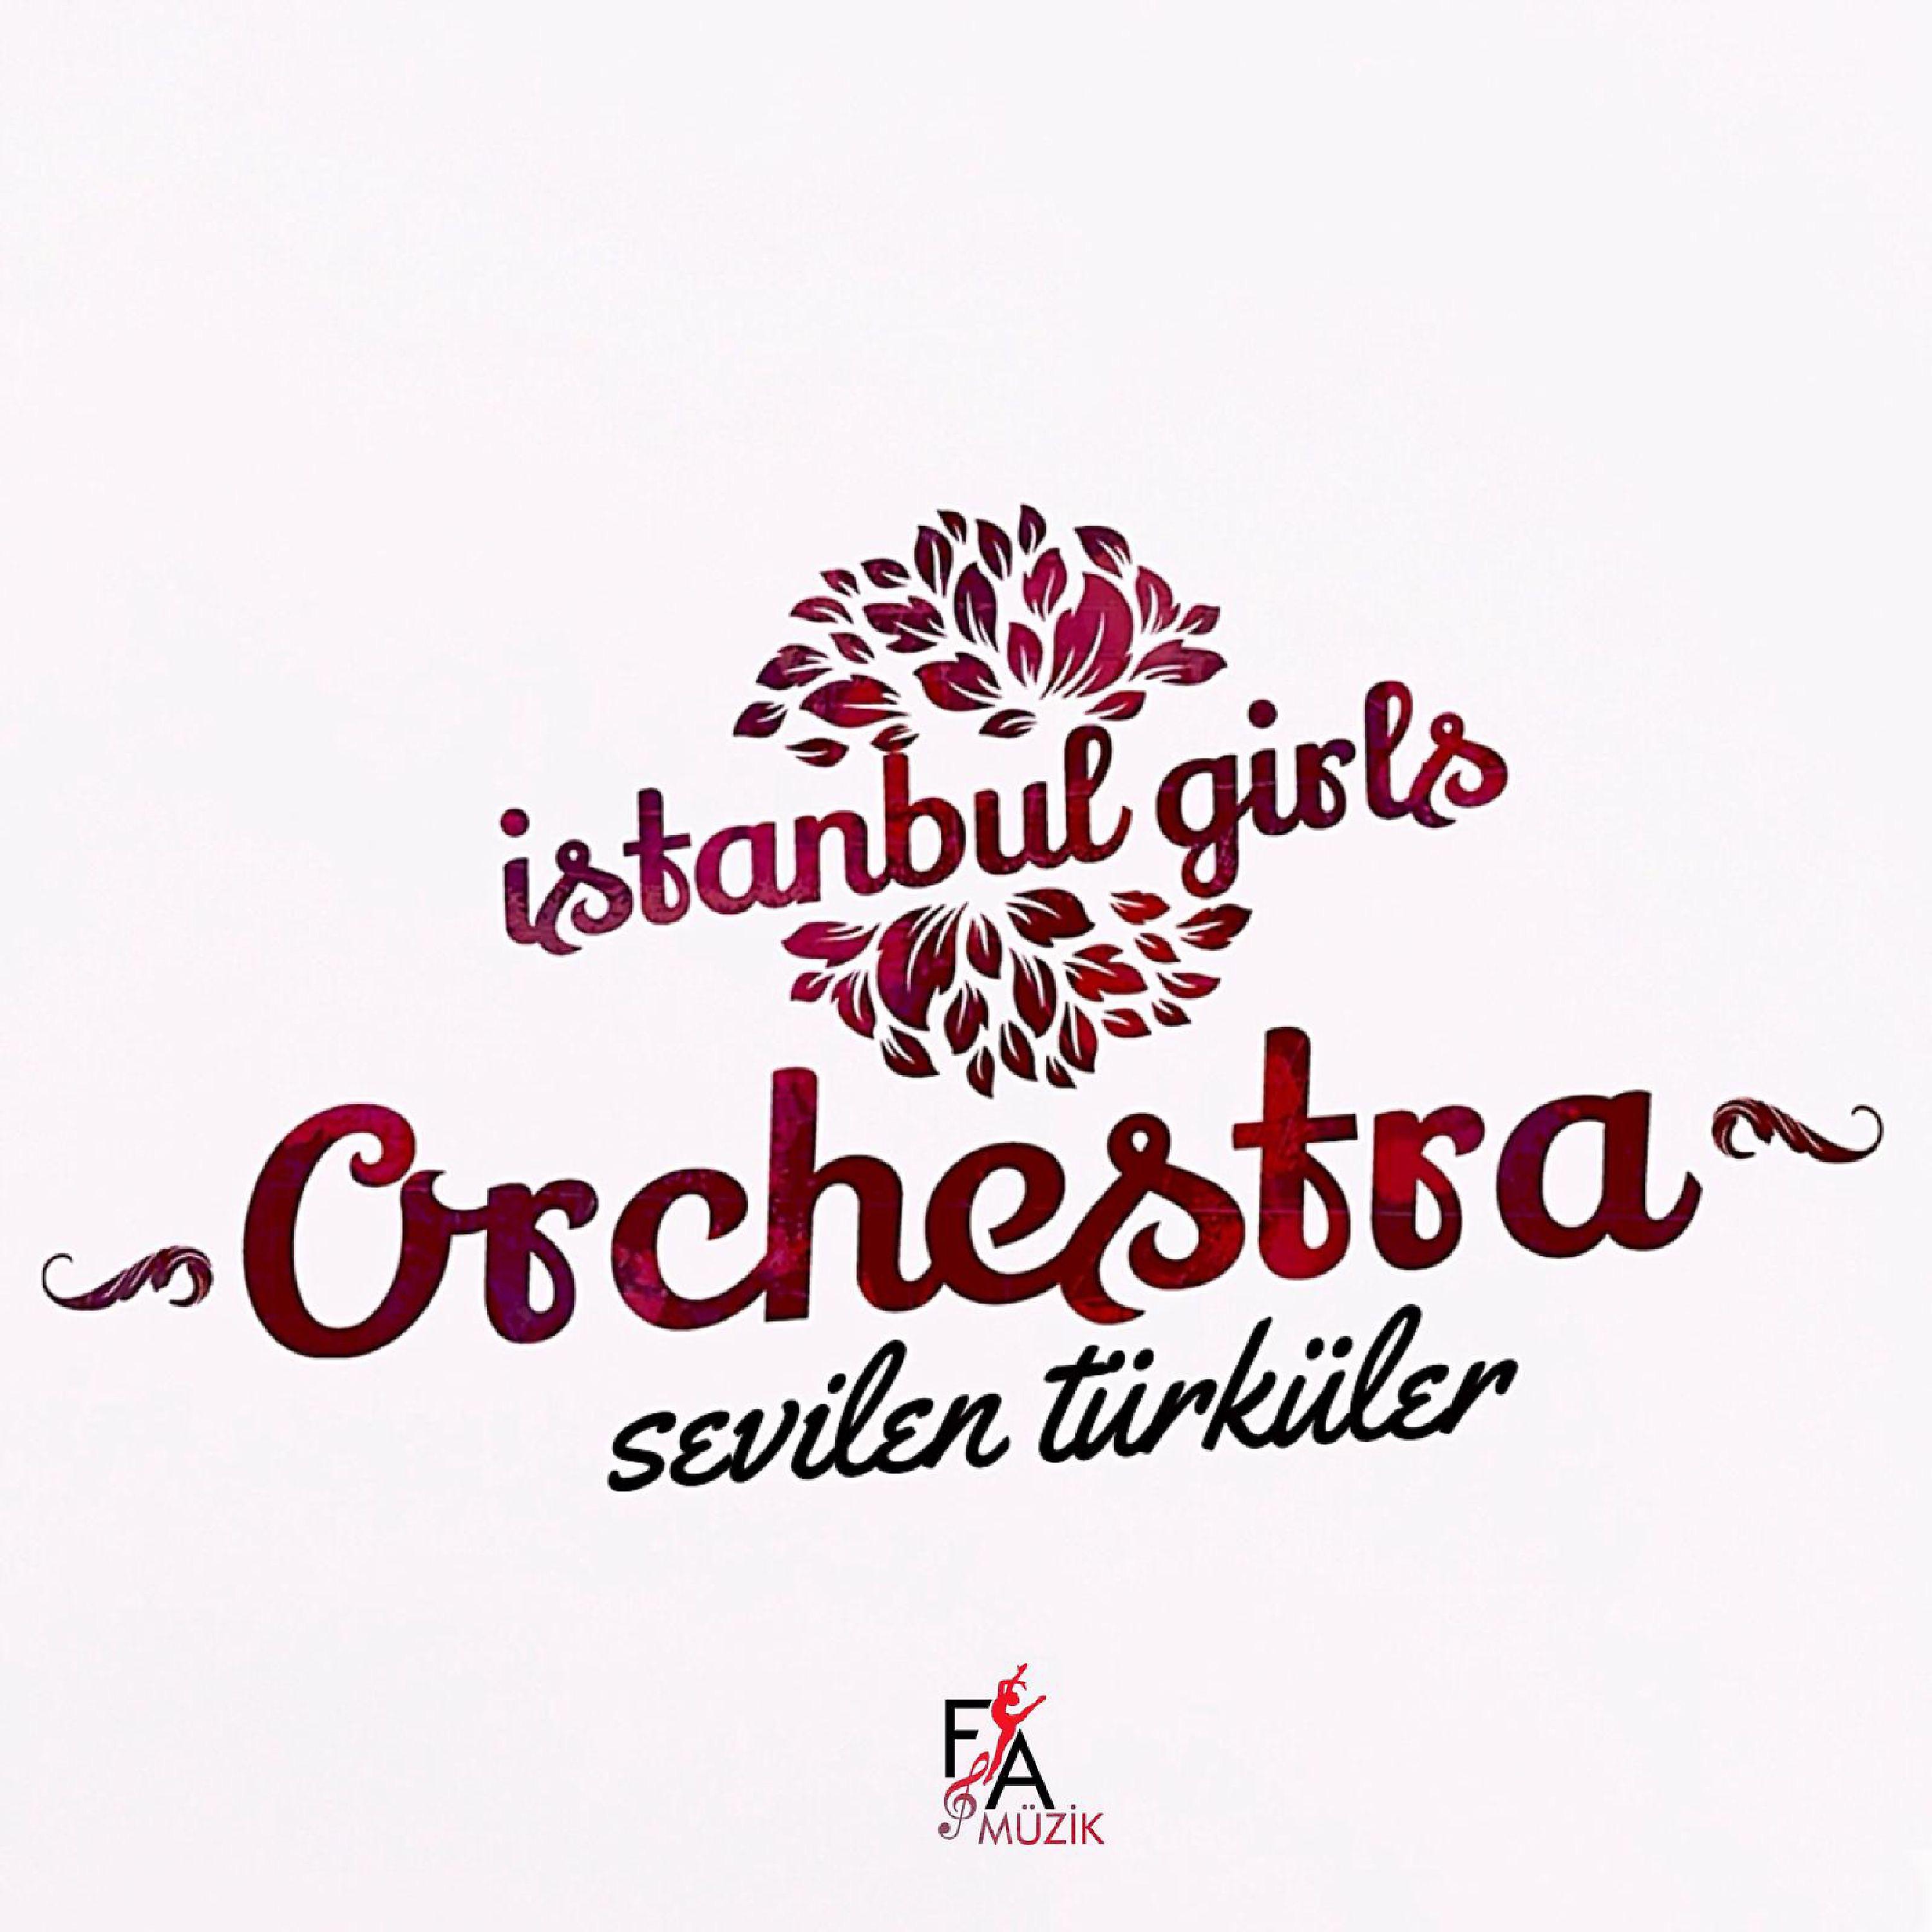 Постер альбома Sevilen Türküler